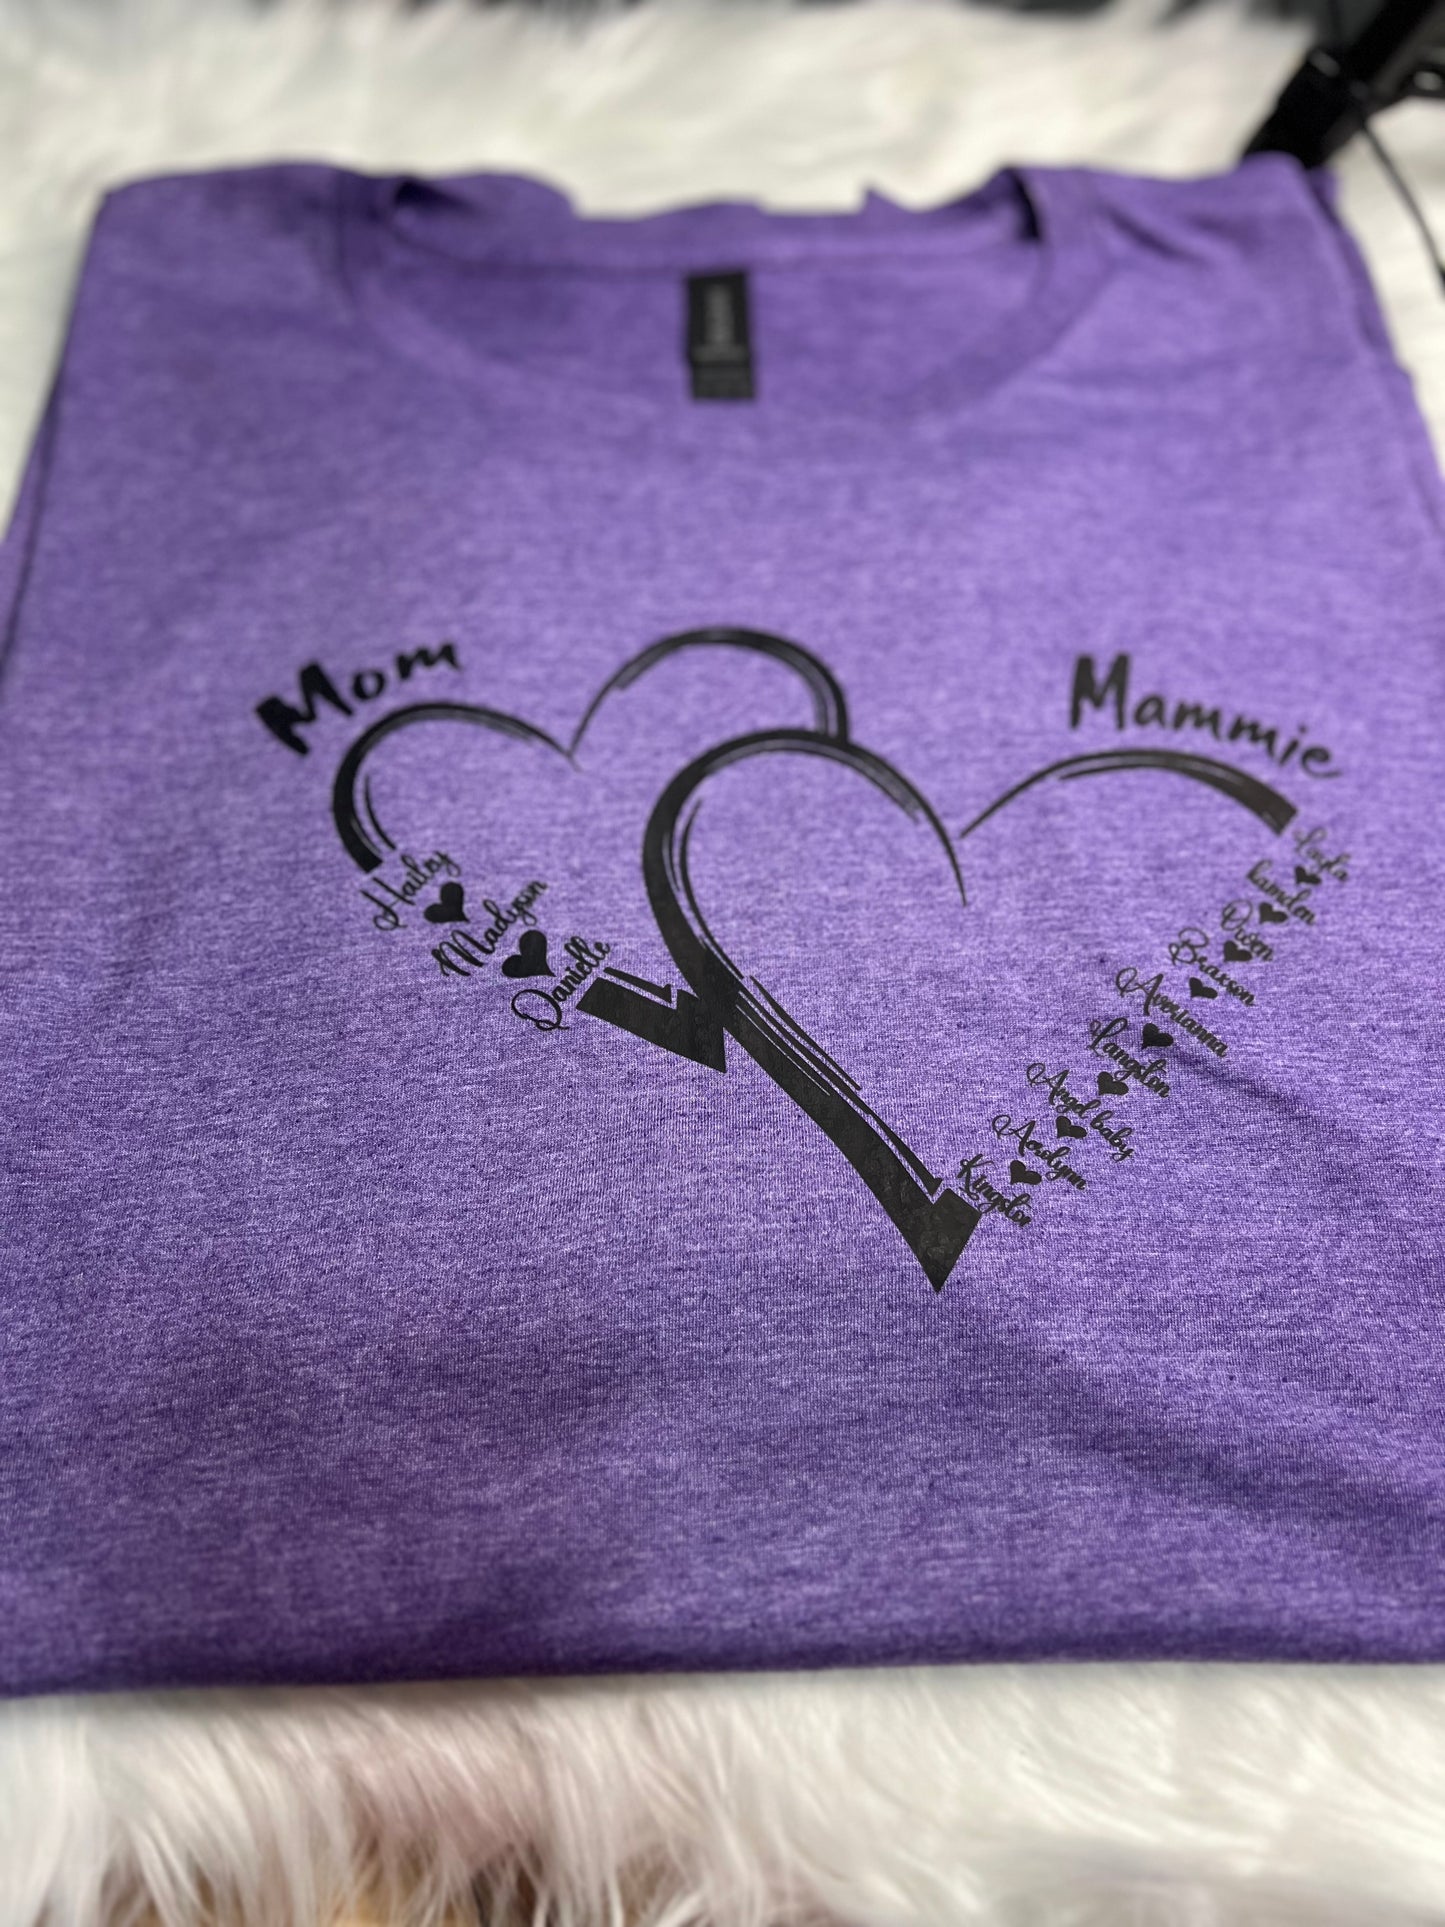 Mama personalized shirts